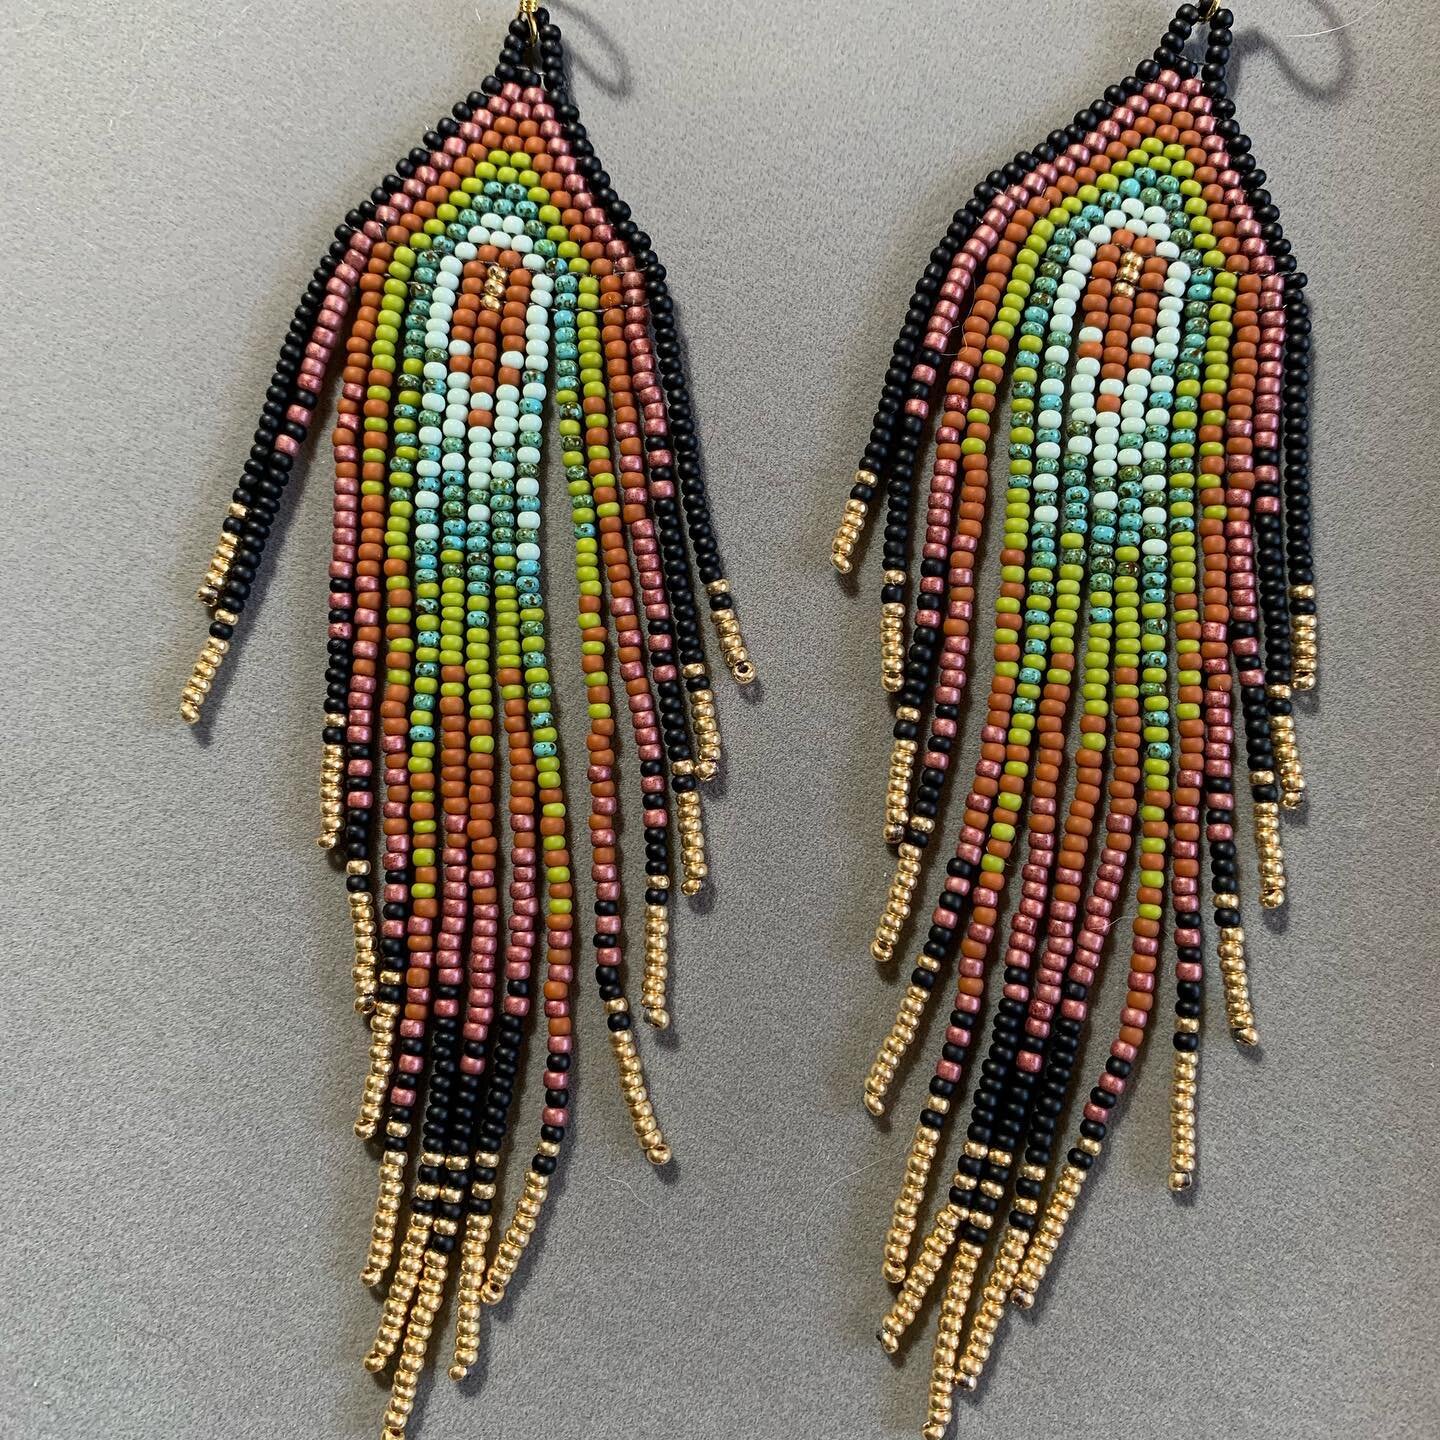 Latest pair of custom seed bead fringe earrings. #seedbeads #seedbeadjewelry #seedbeadearrings #seedbeadfringe #seedbeadfringeearrings #shimmer #goddessadornments